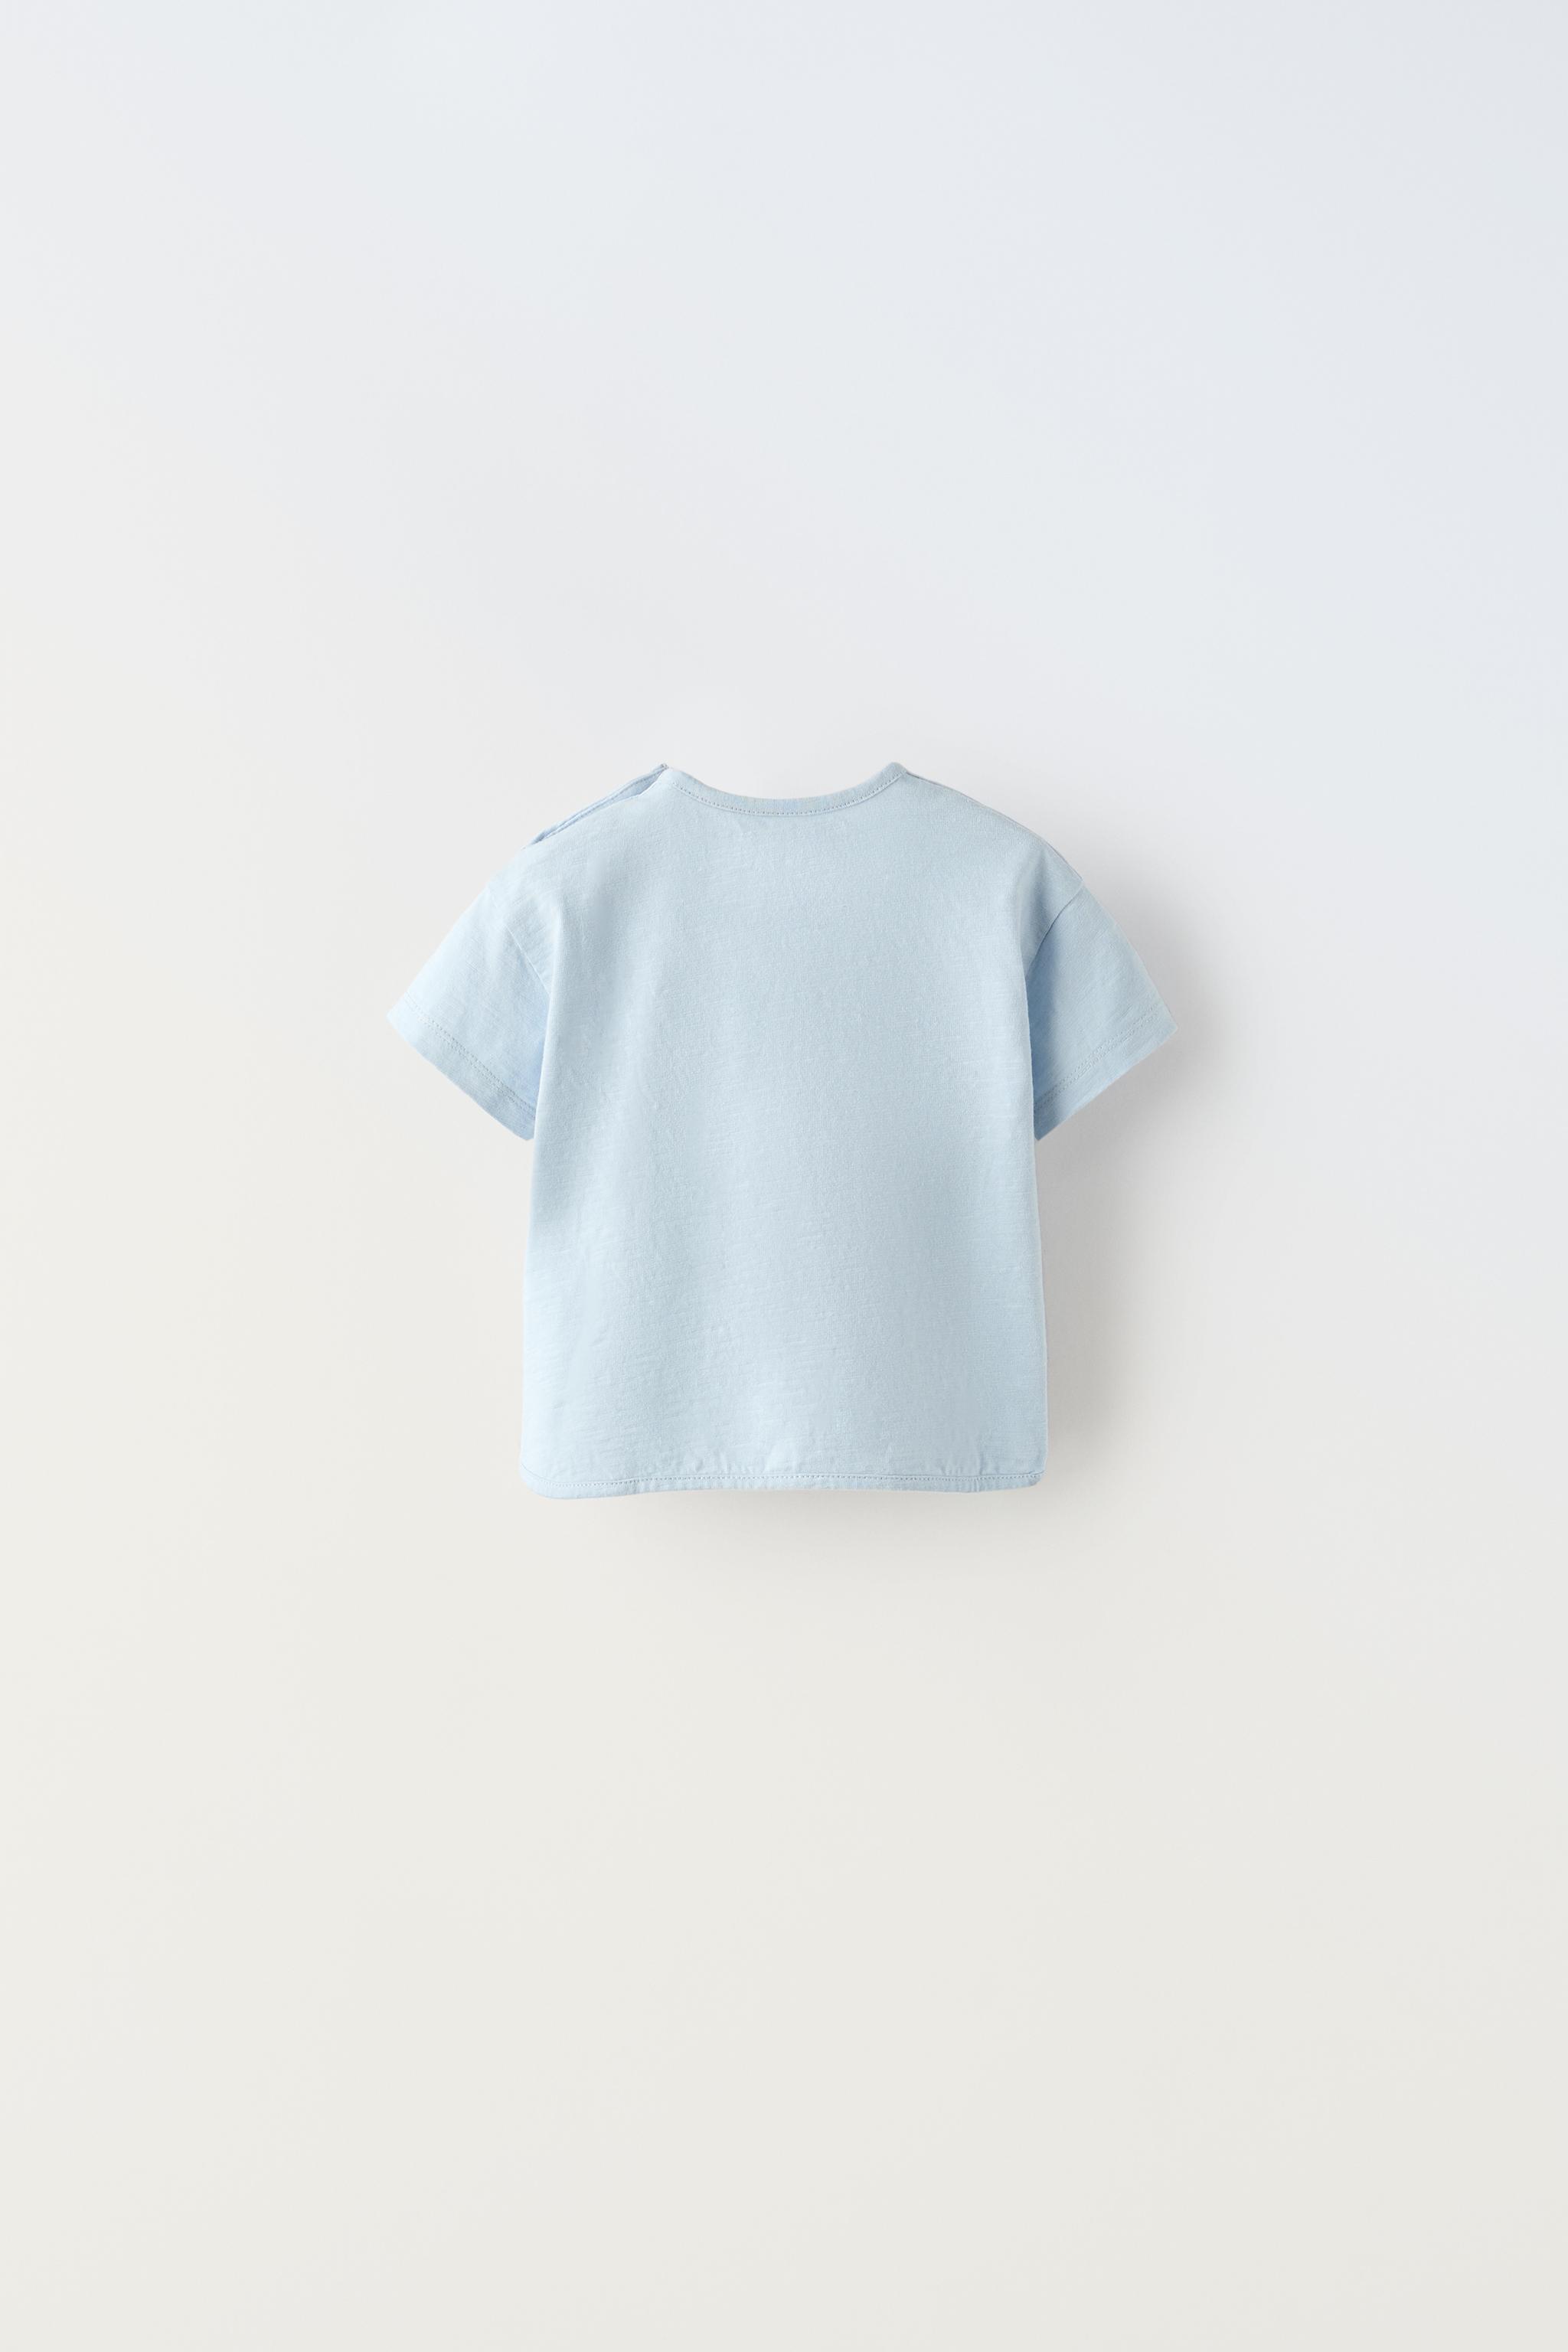 Zara - Seagull Shirt - Light Blue - Kids